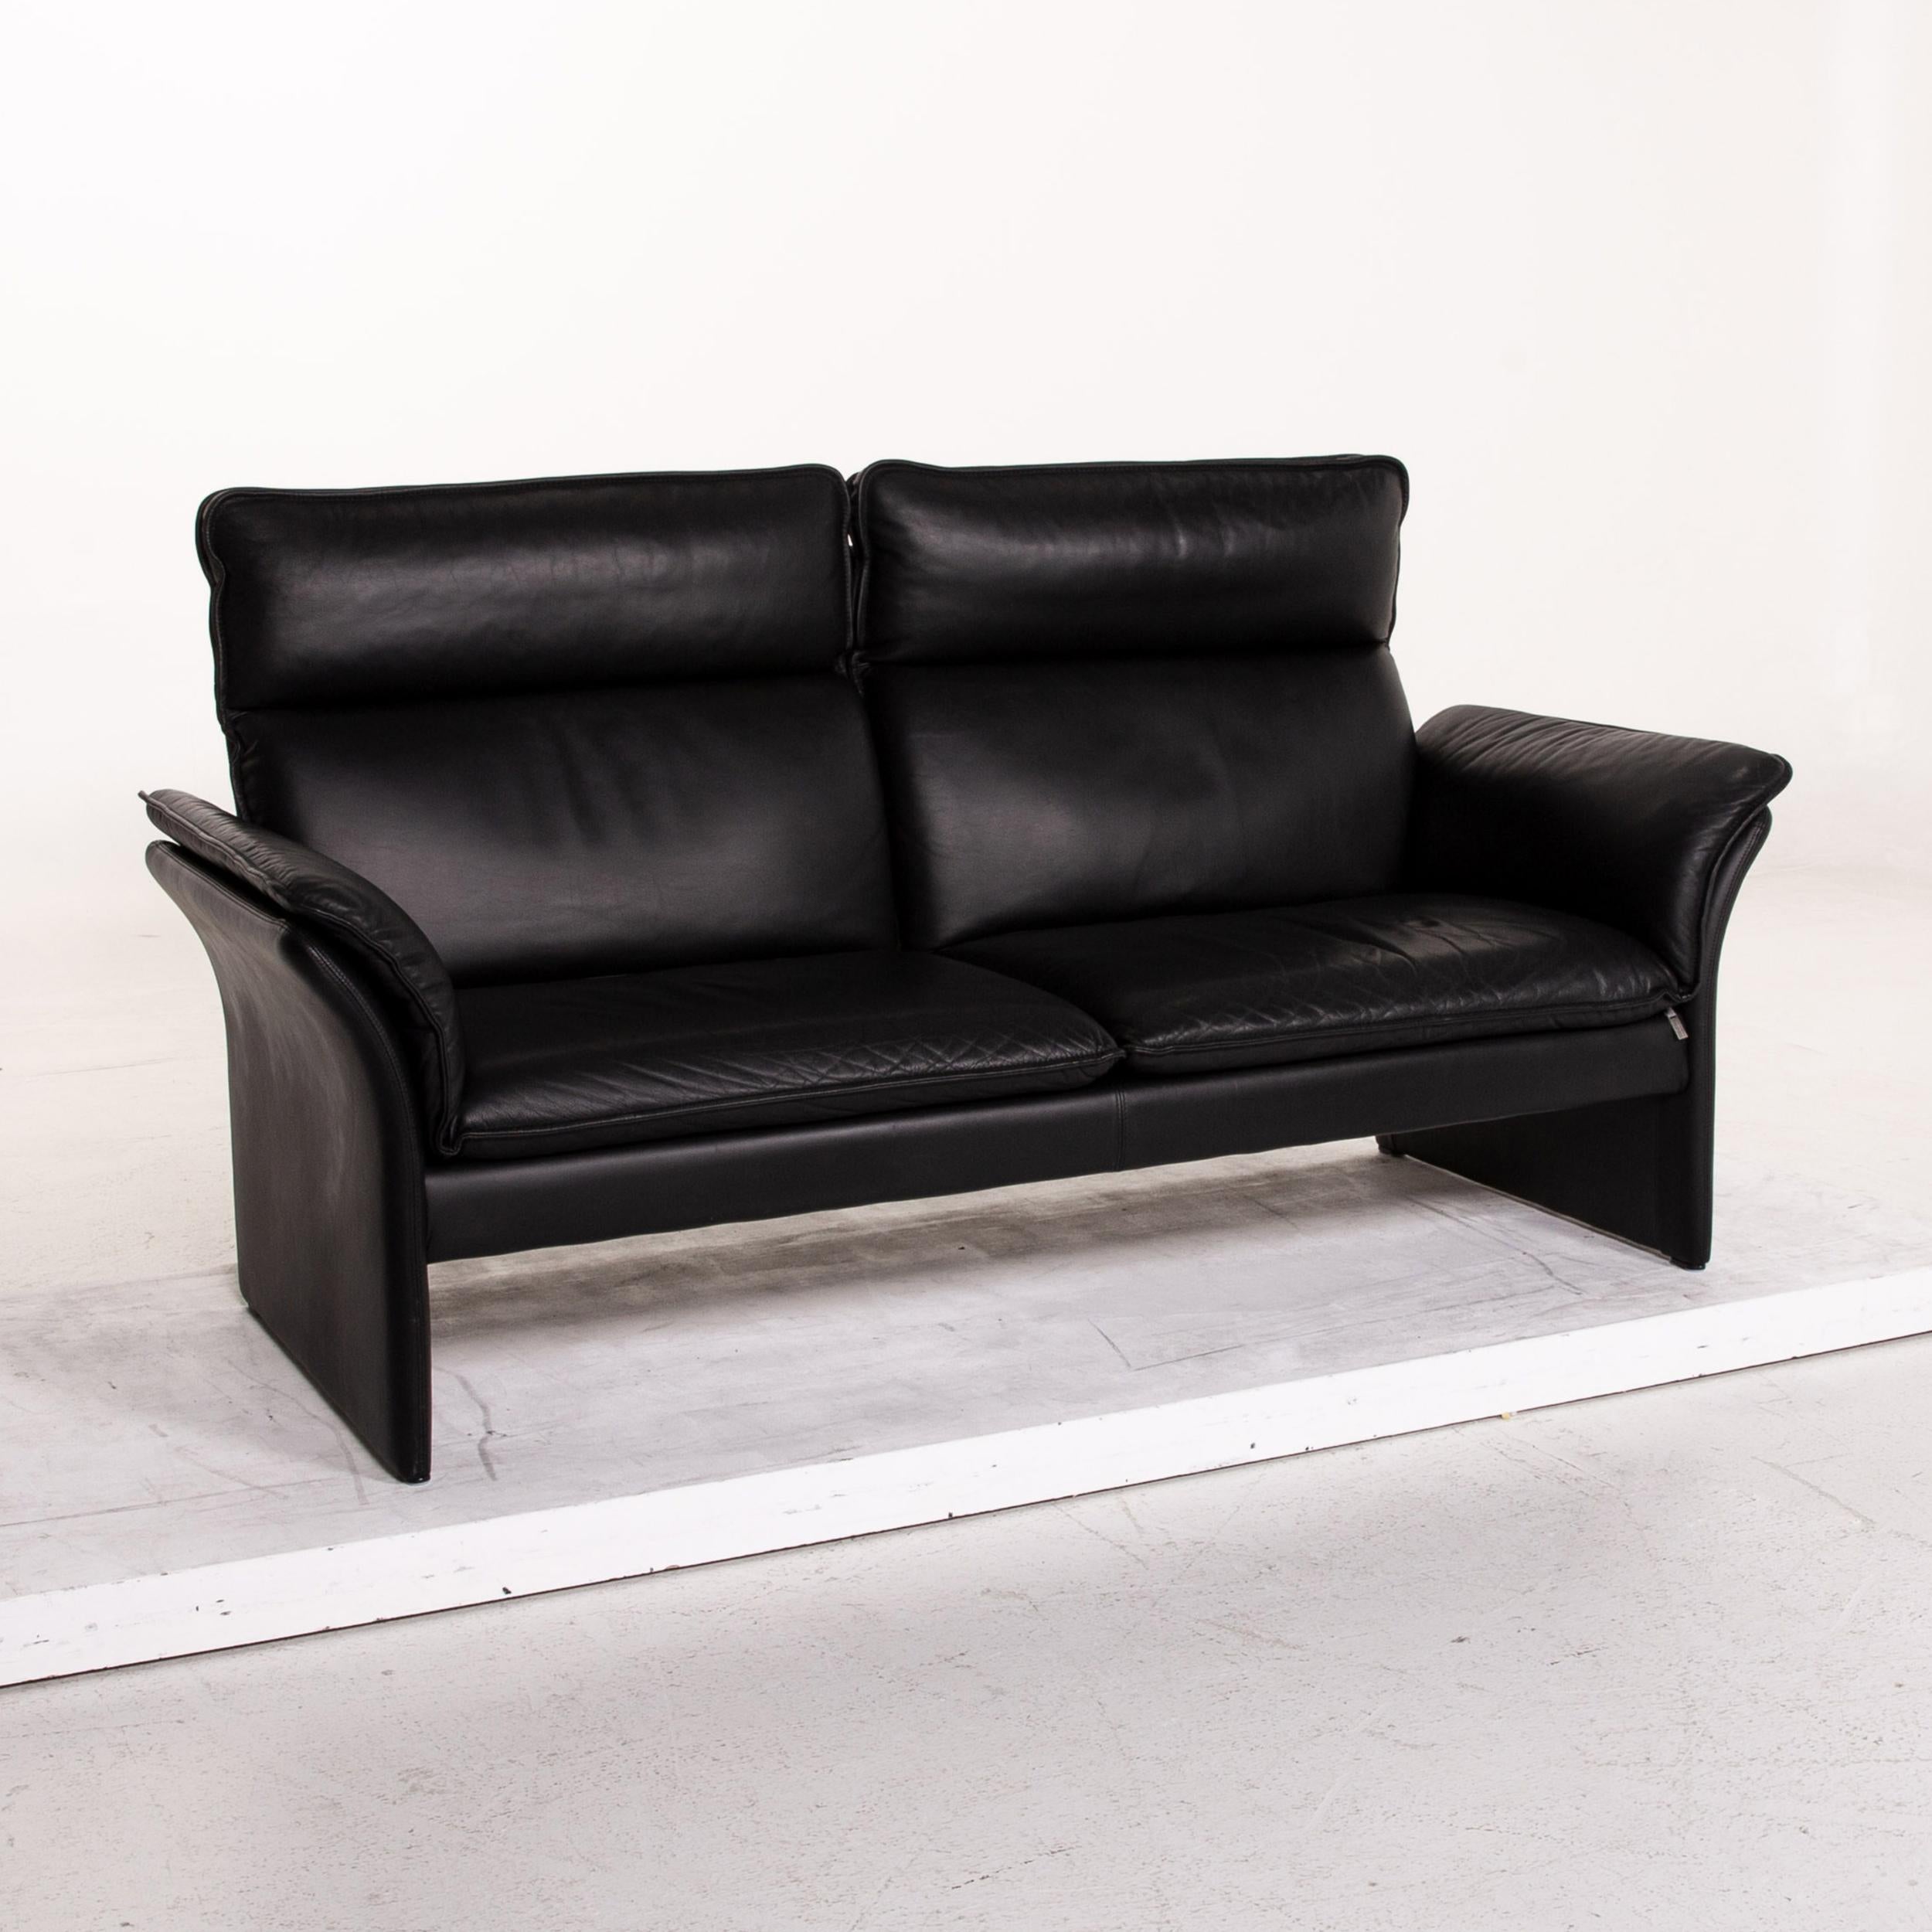 Three-Point Scala Leather Sofa Set Black 1 Three-Seat 1 Two-Seat 6